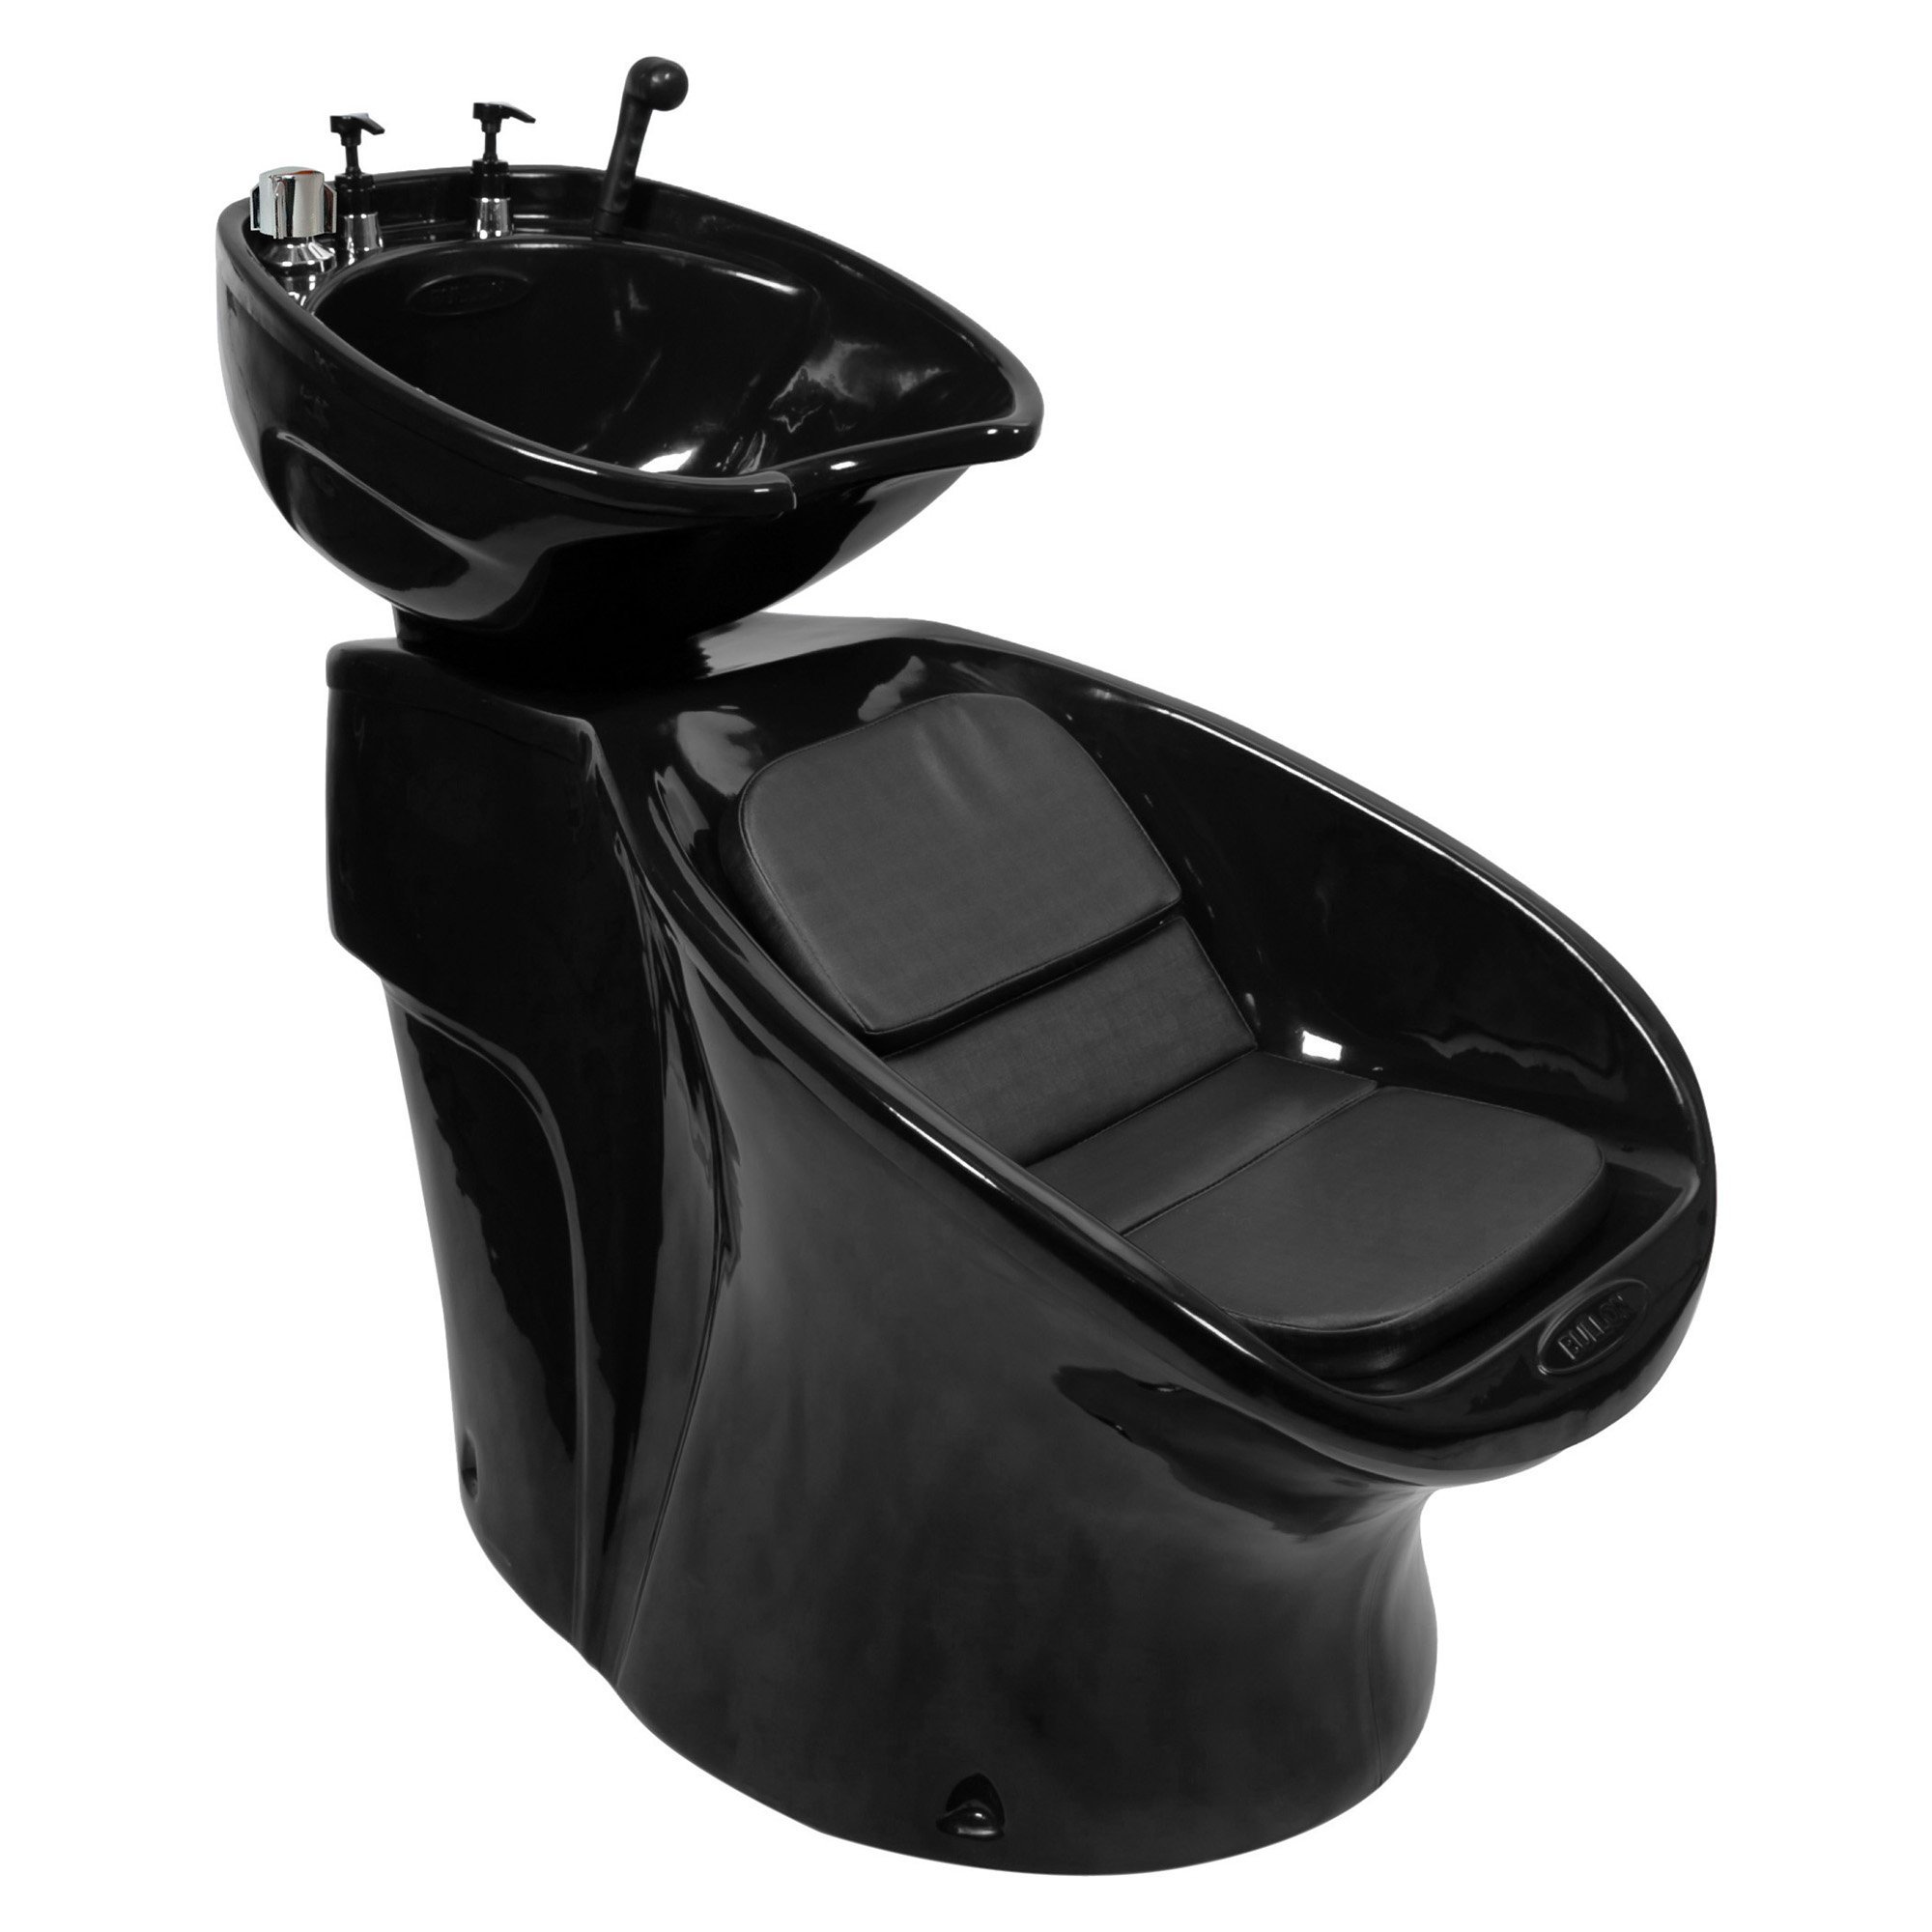 Lavatório Neon Shampoo + Cadeira Lotus Reclinável + Carrinho Auxiliar - Preto - 127 - 3